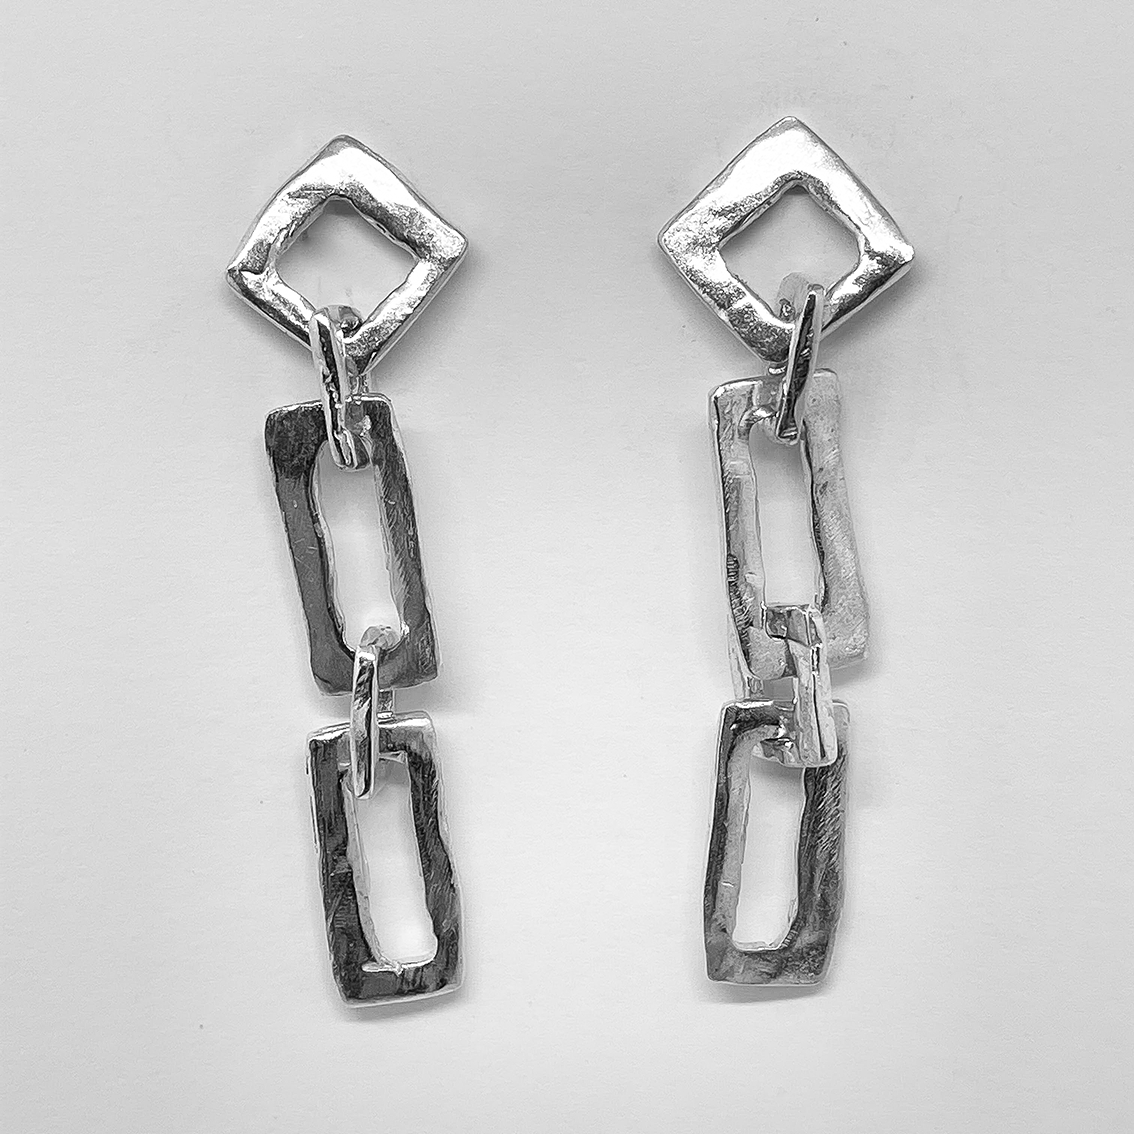 Modernist Earrings No. 4 - Geometric Cutout Drop Earrings in Sterling Silver